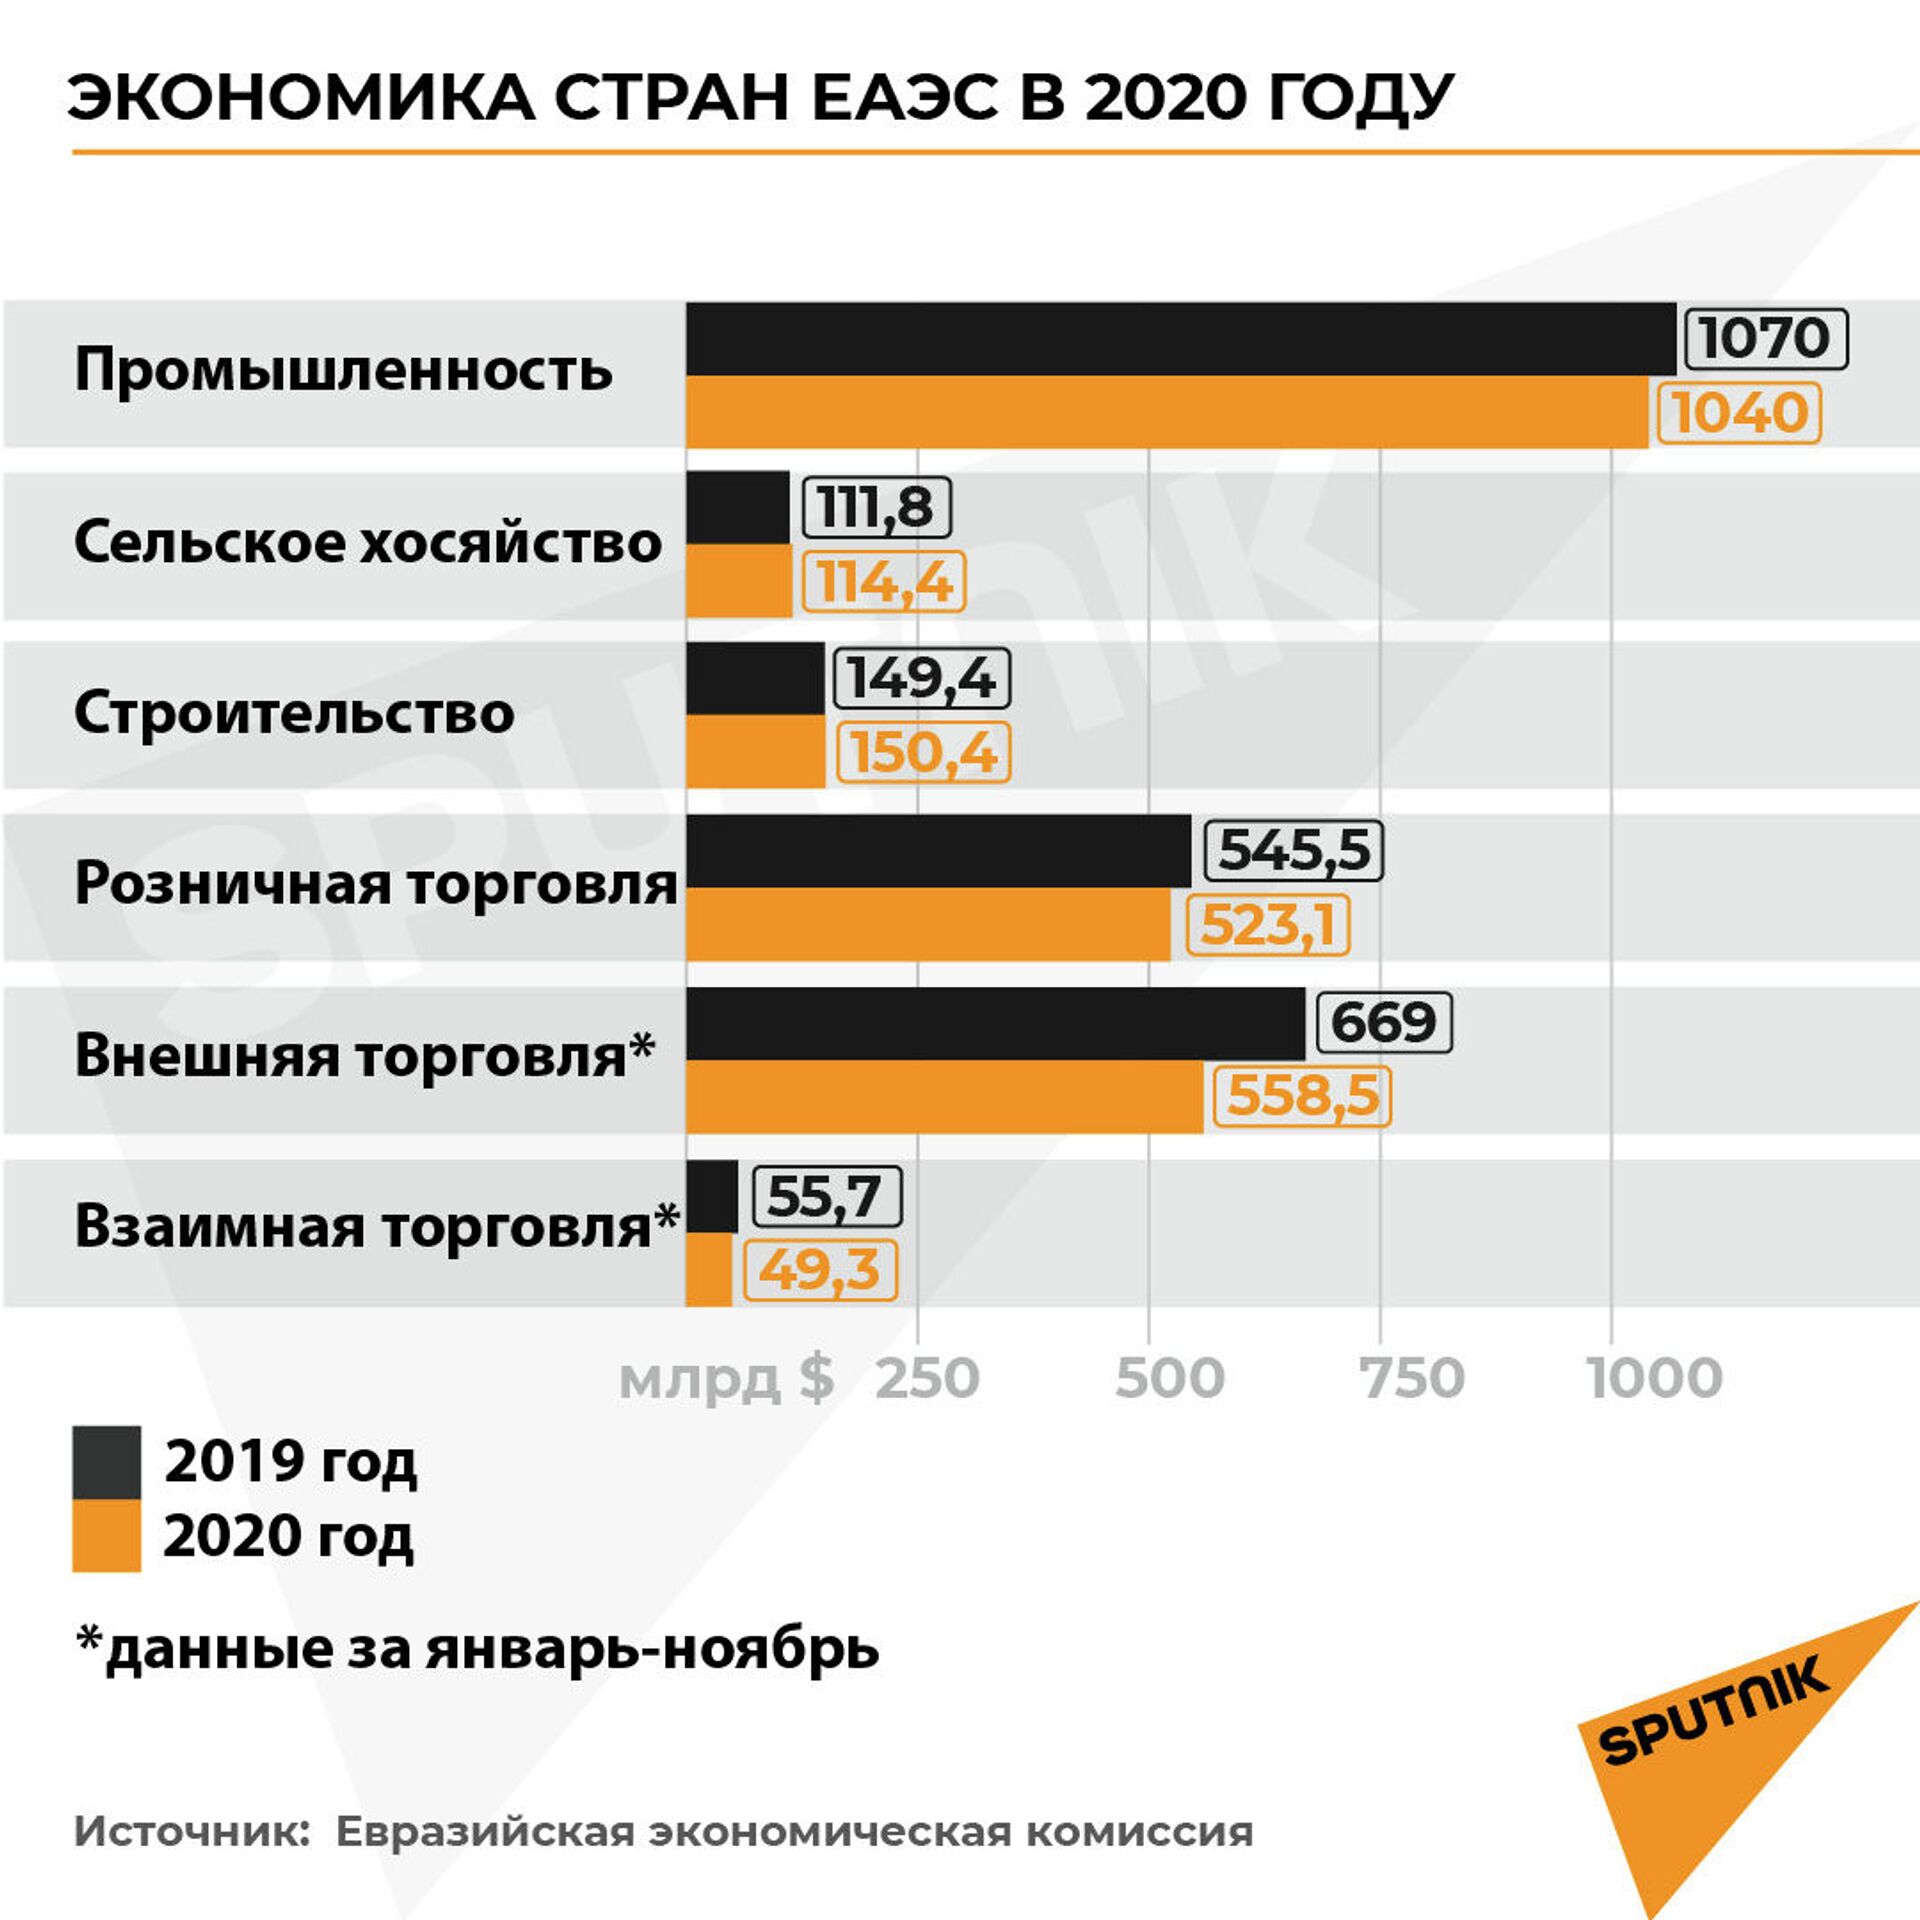 Цифровизация и общий план: что нужно ЕАЭС для роста экономики? - Sputnik Казахстан, 1920, 18.02.2021